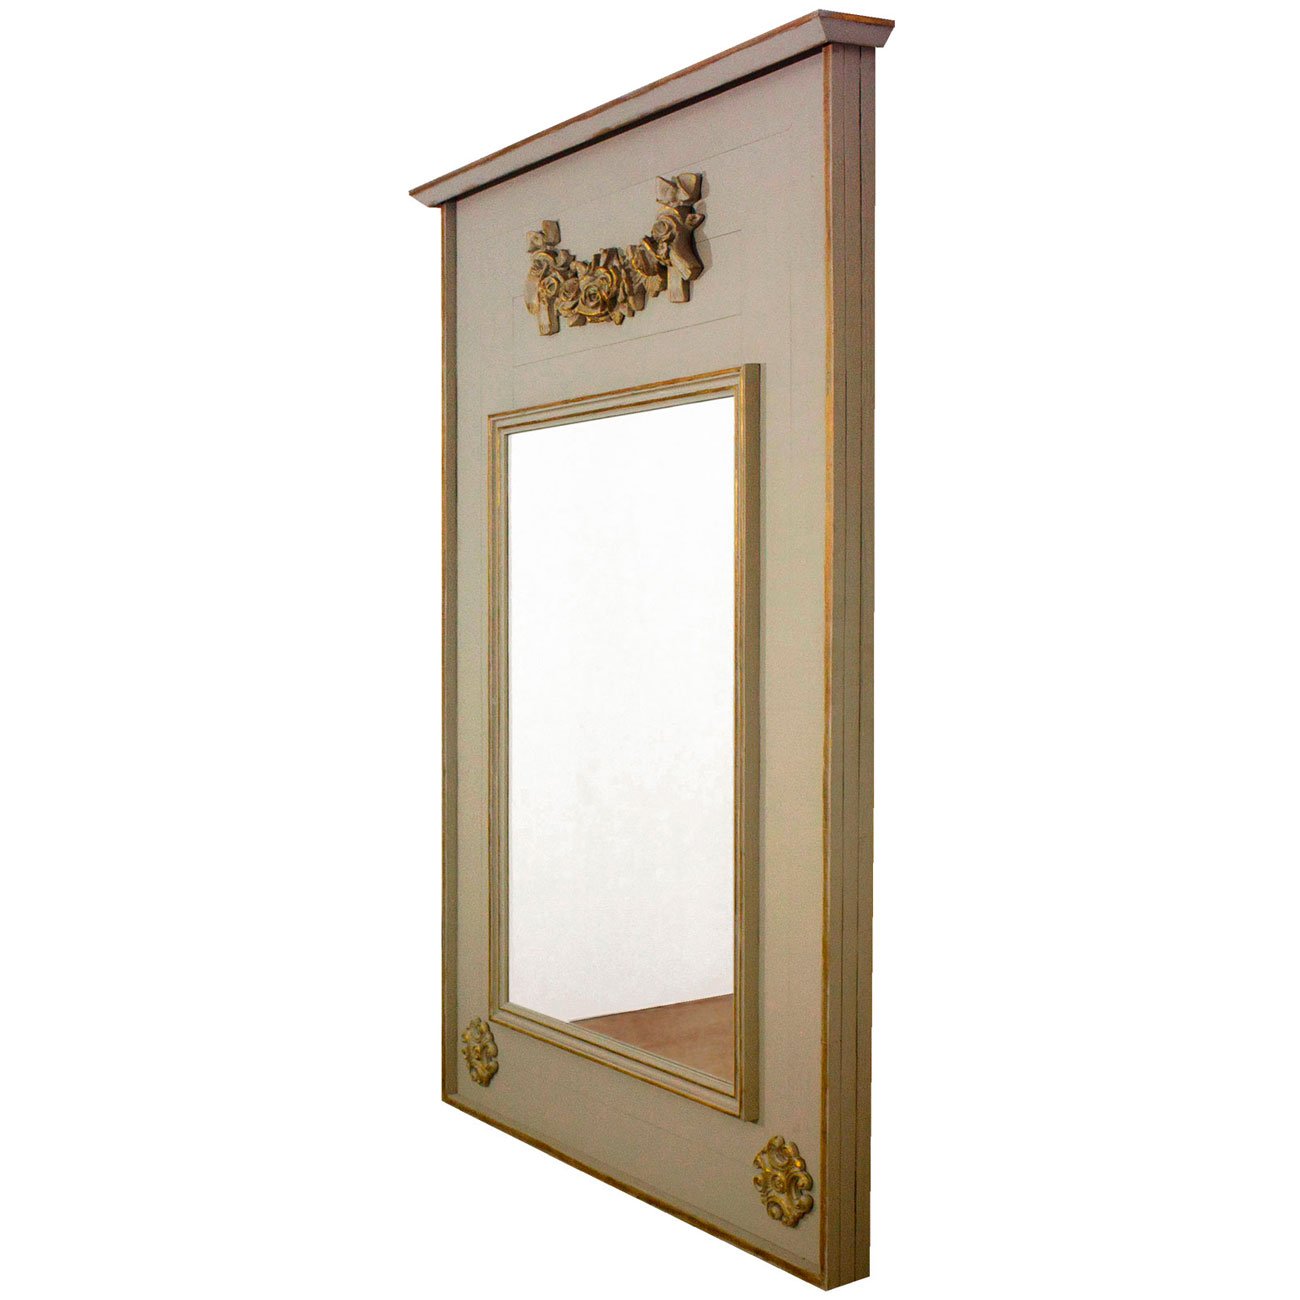 Espelho Grande com Moldura Rústica com Detalhes Dourados 120x170 cm